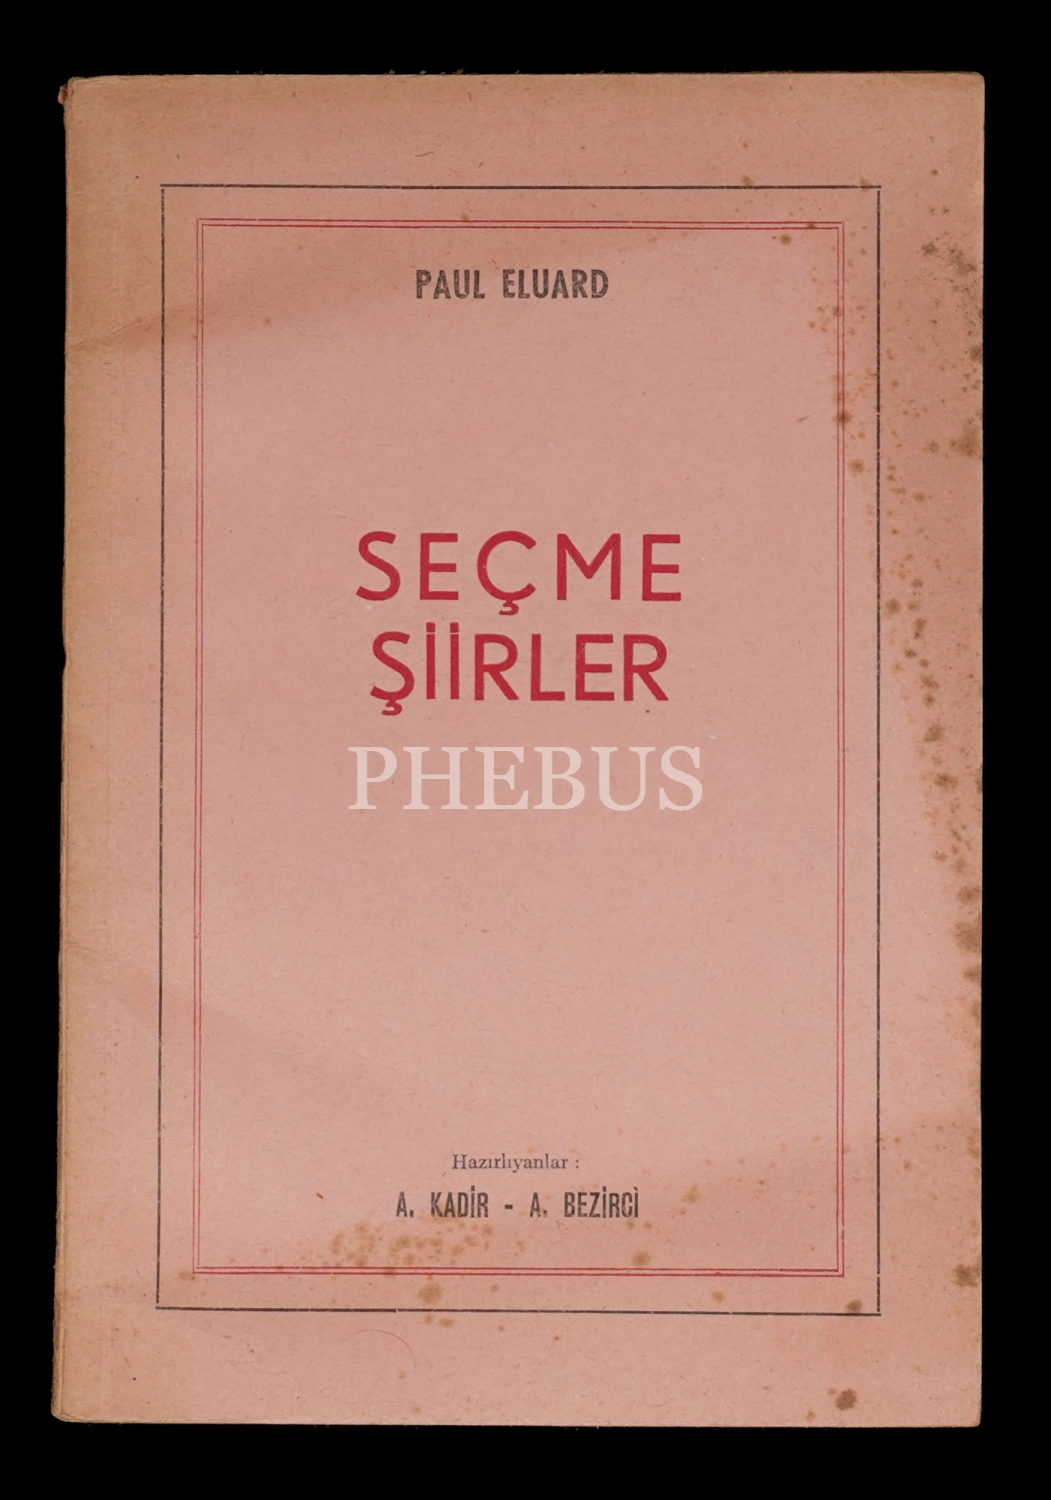 SEÇME ŞİİRLER, Paul Eluard, (çevirenler: A. Kadir - Asım Bezirci), 1961, İstanbul Matbaası, 71 sayfa, 21x14 cm...